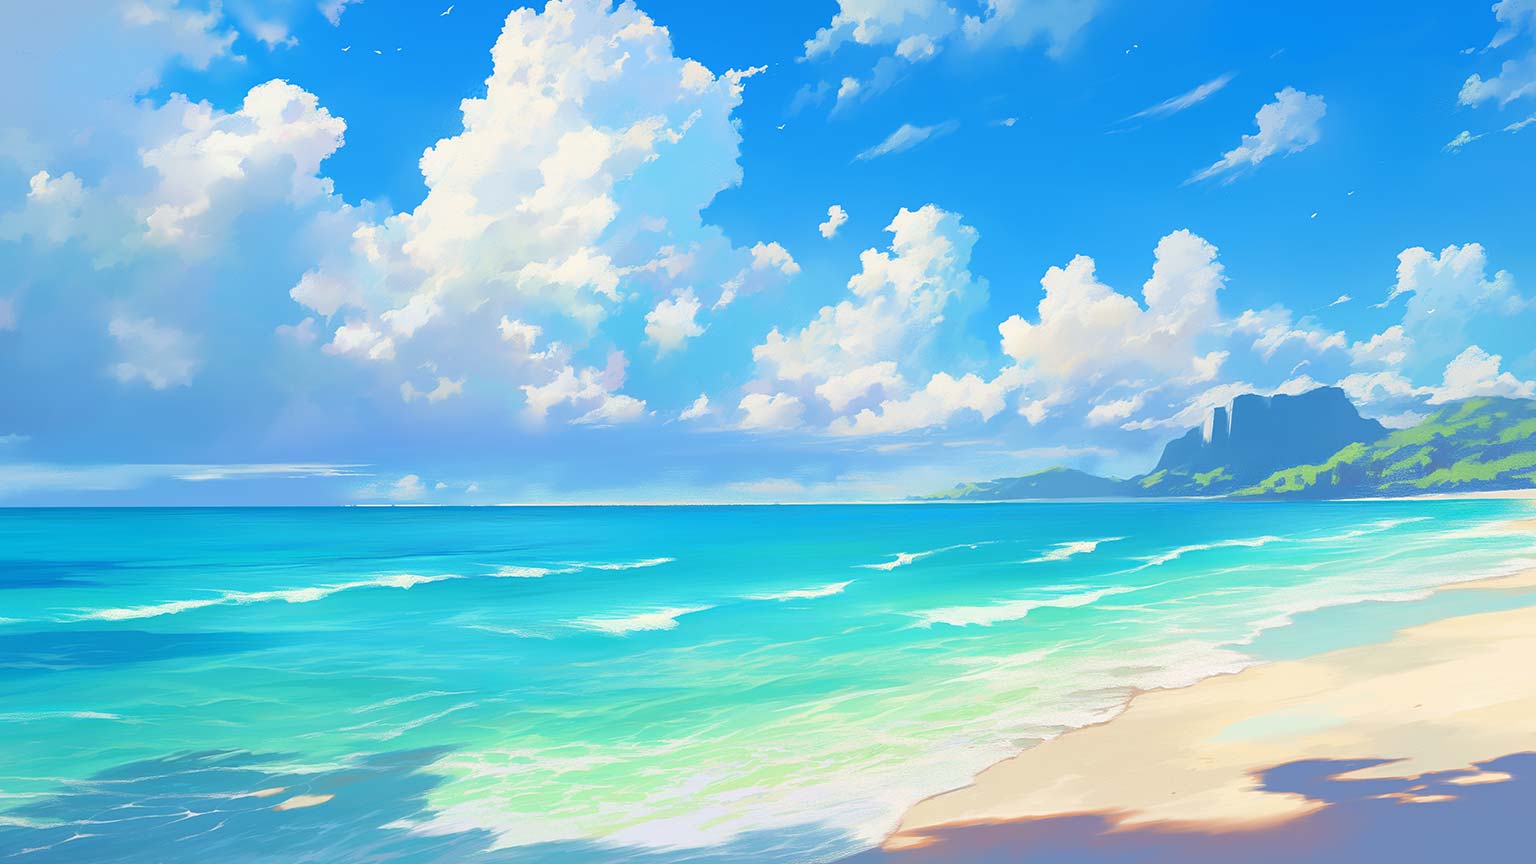  Summer Hintergrundbild 1536x864. Beach Summer Aesthetic Desktop Wallpaper Wallpaper 4K